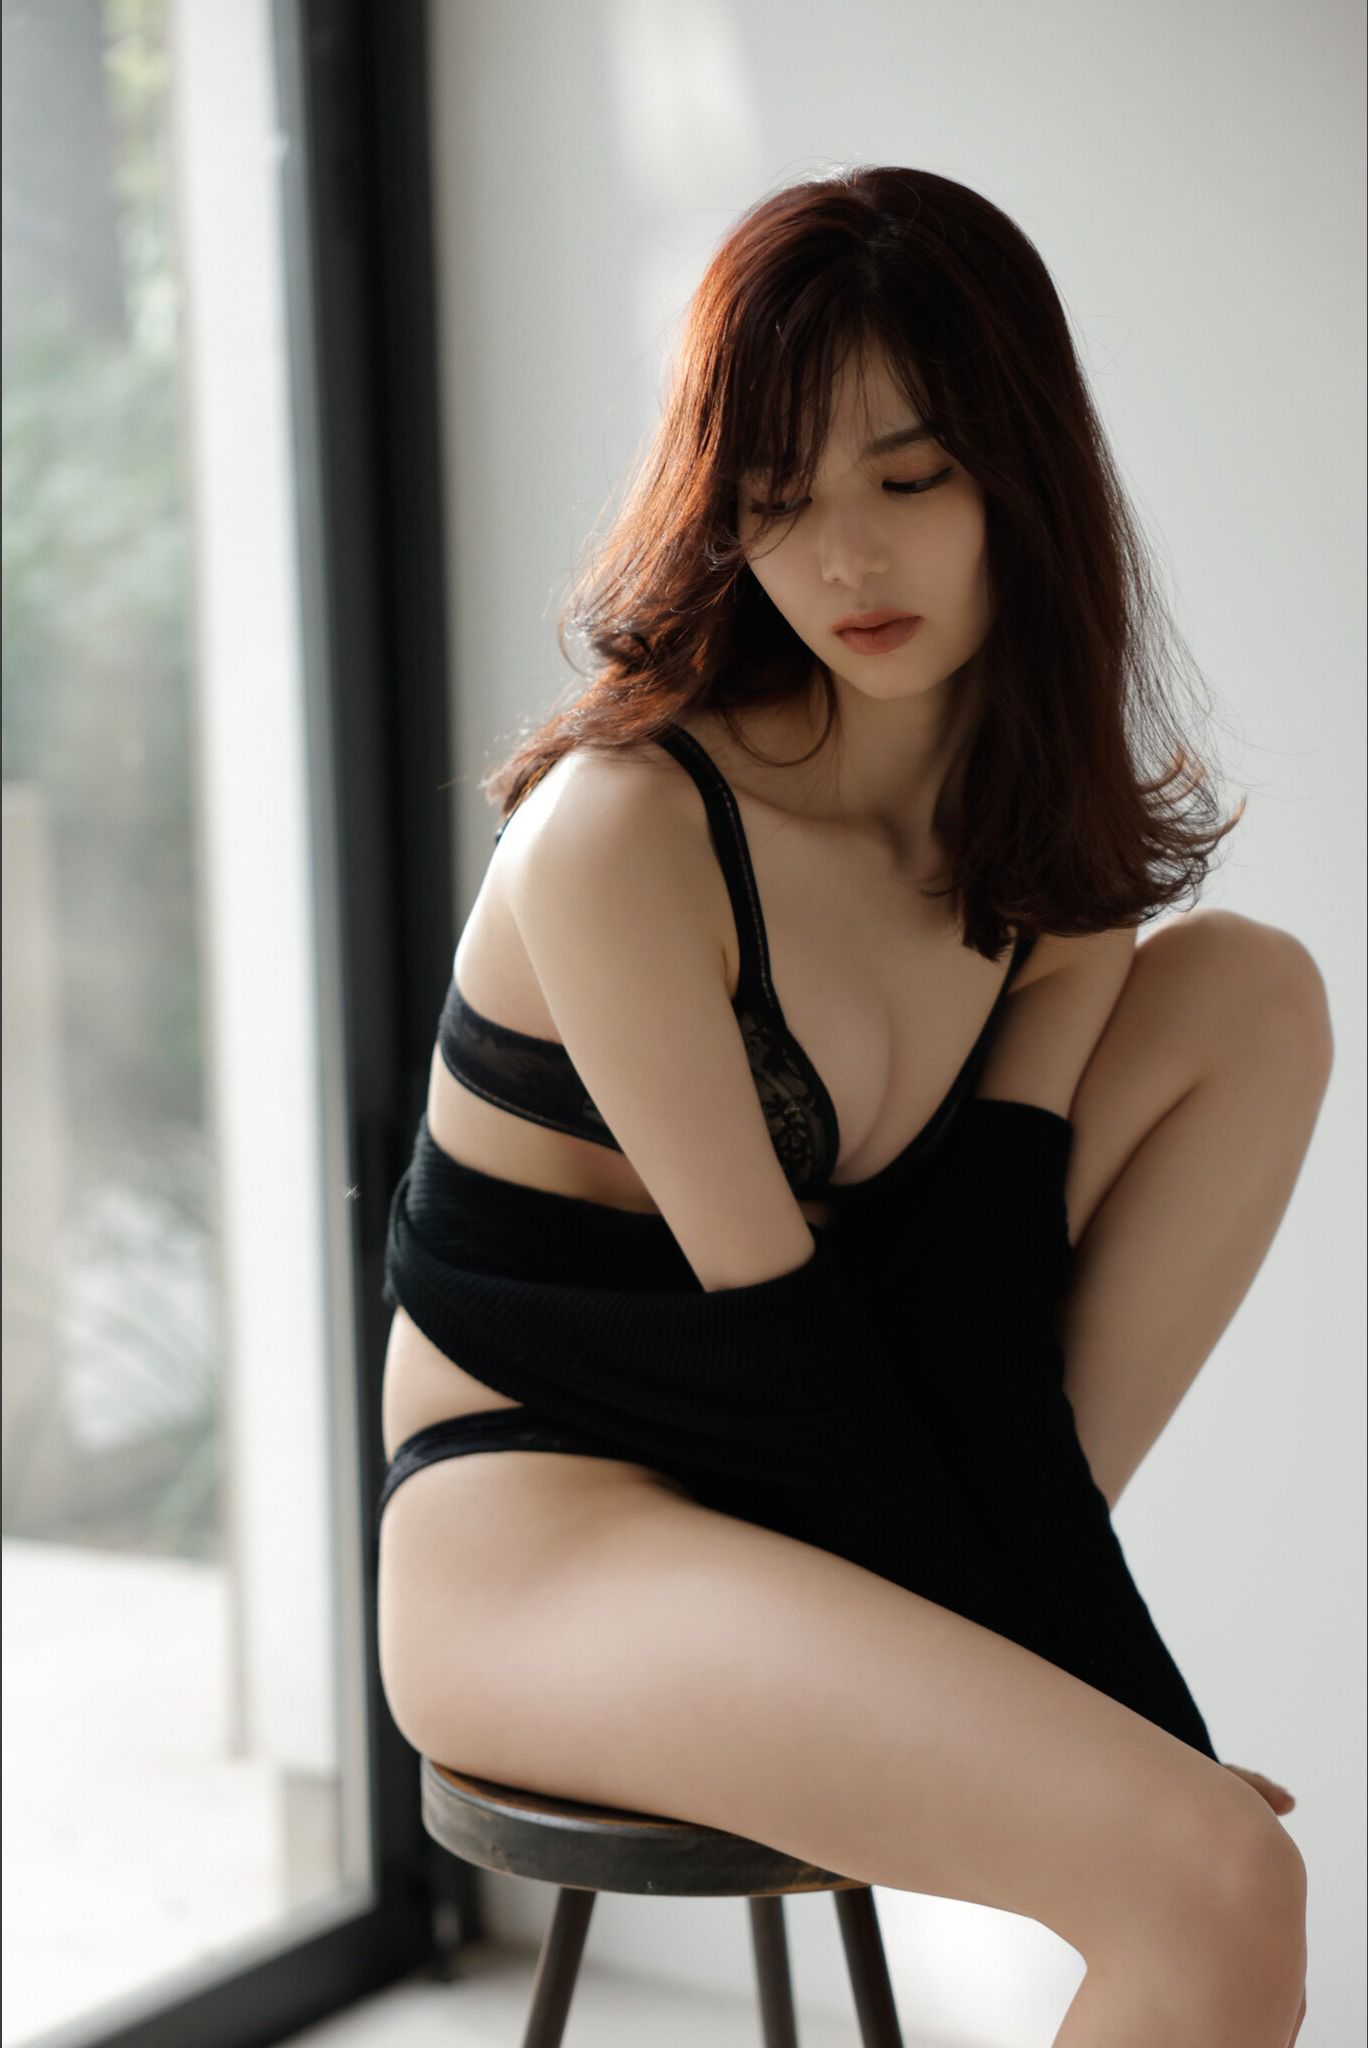 Riko Matsudaira 松平璃子 - Glossy and sexy 艶っぽくて、色っぽい。 vol.1/(48P)